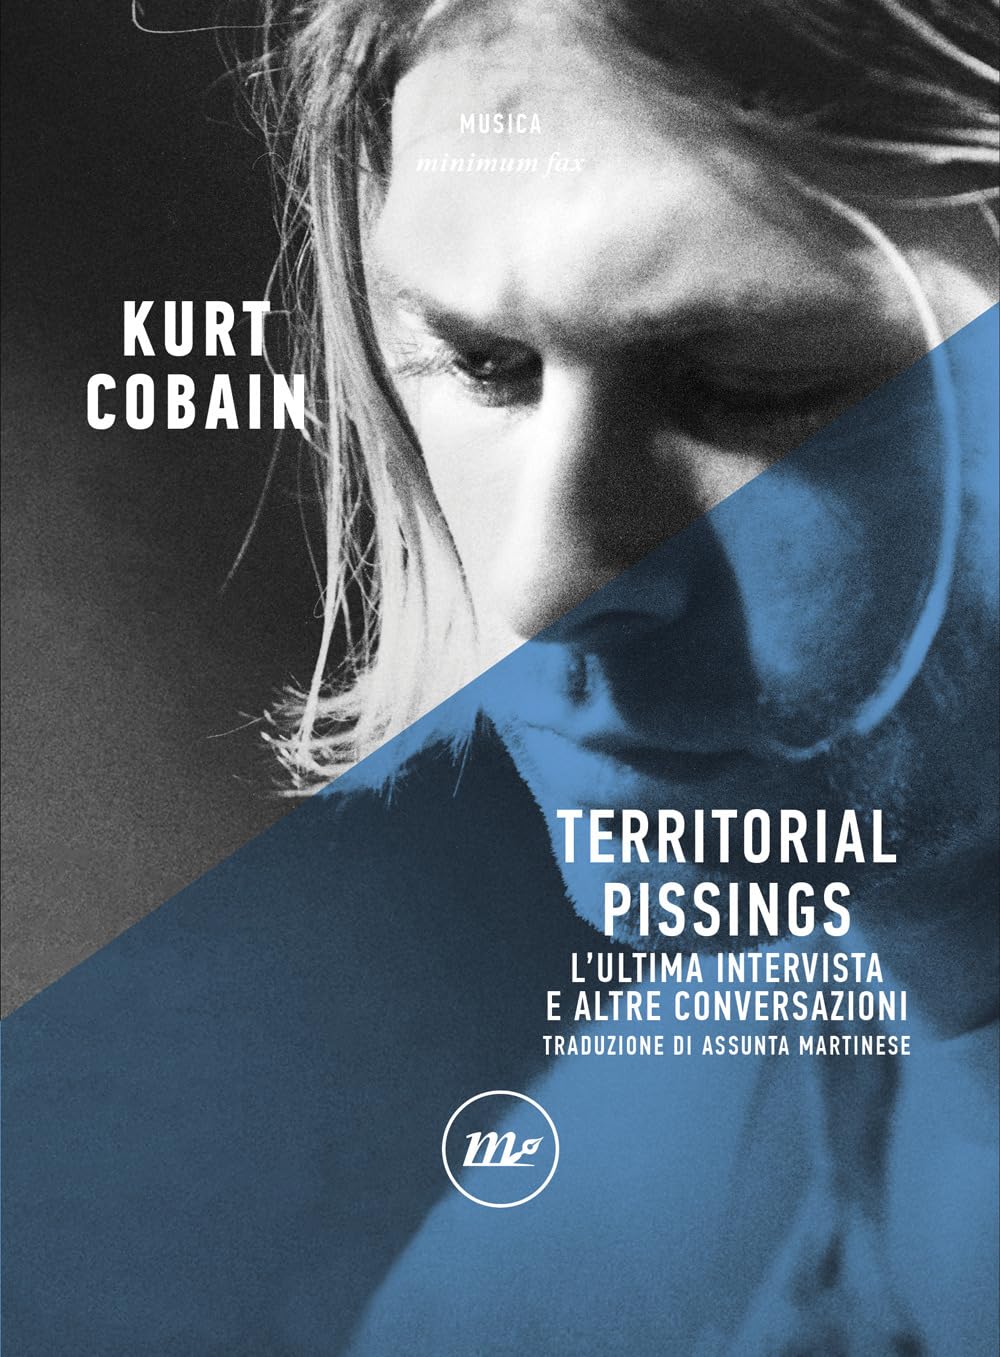 Territorial Pissings di Kurt Cobain – Recensione